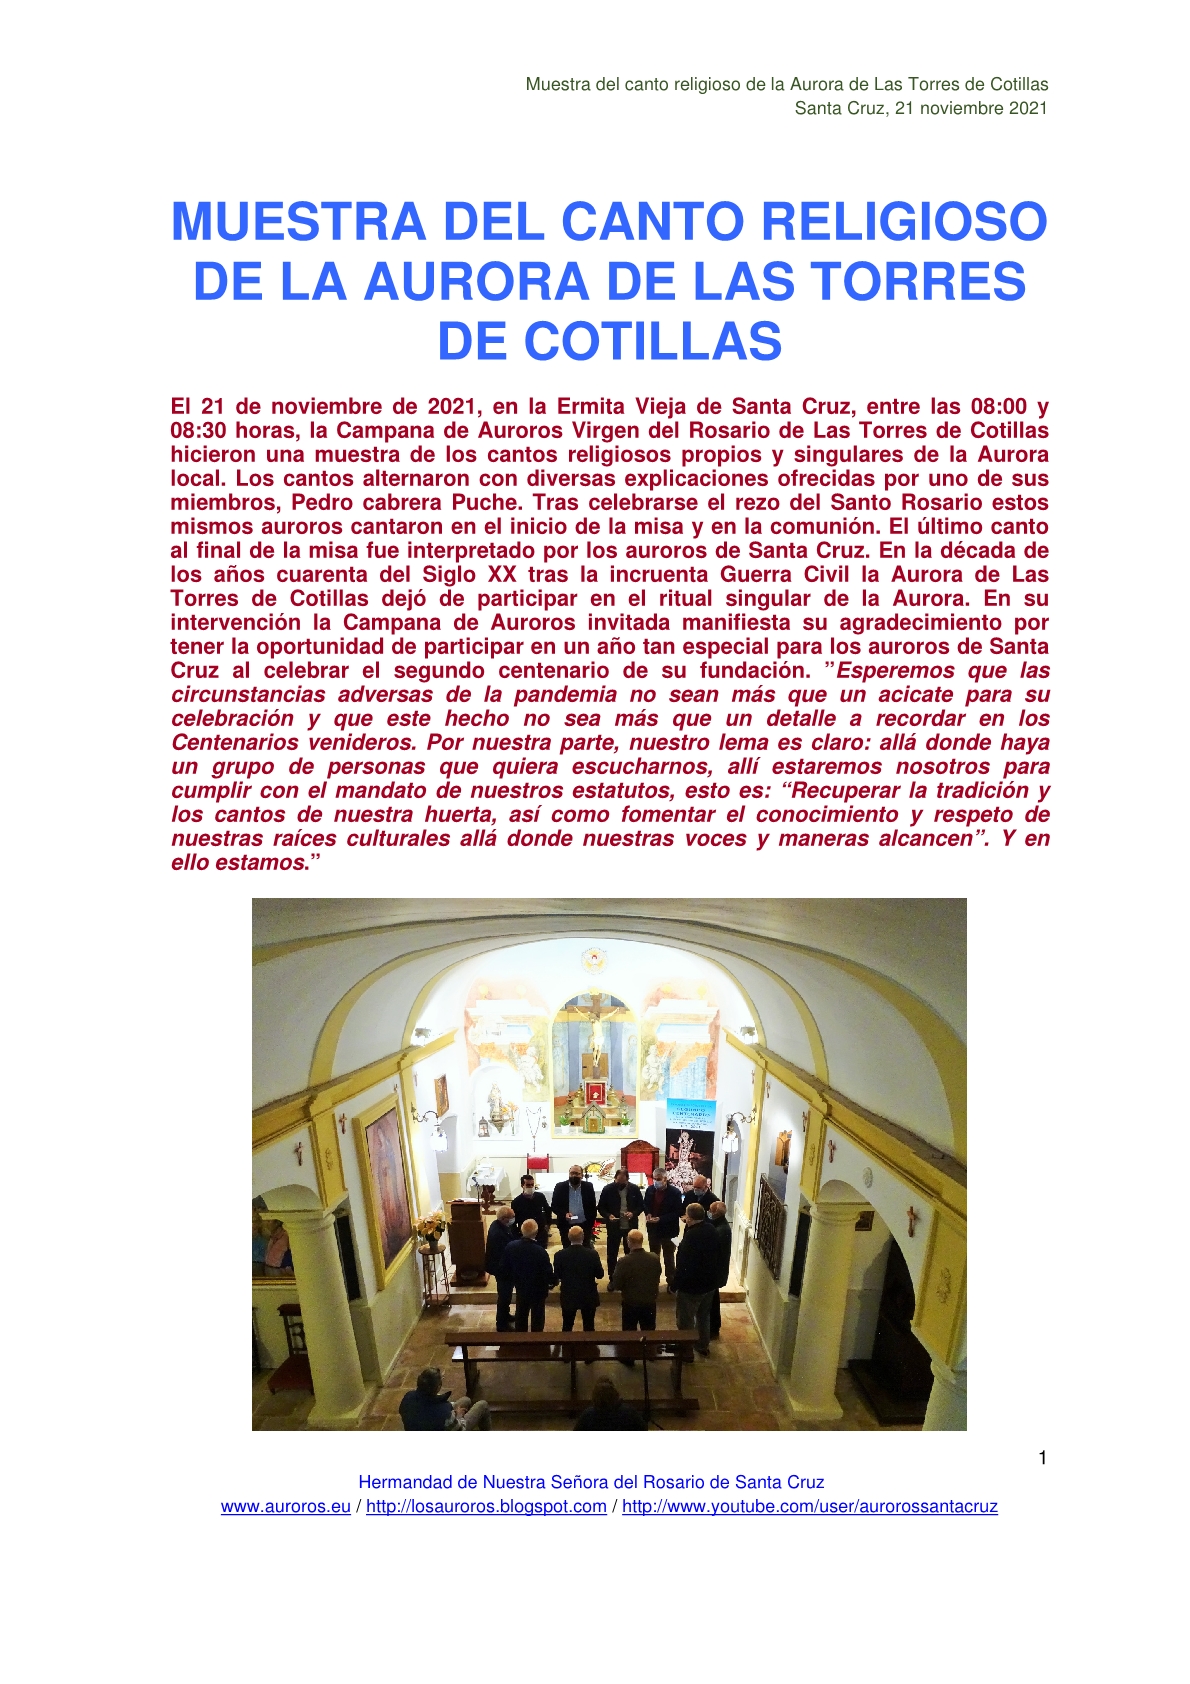 MUESTRA DEL CANTO RELIGIOSO DE LA AURORA DE LAS TORRES DE COTILLAS